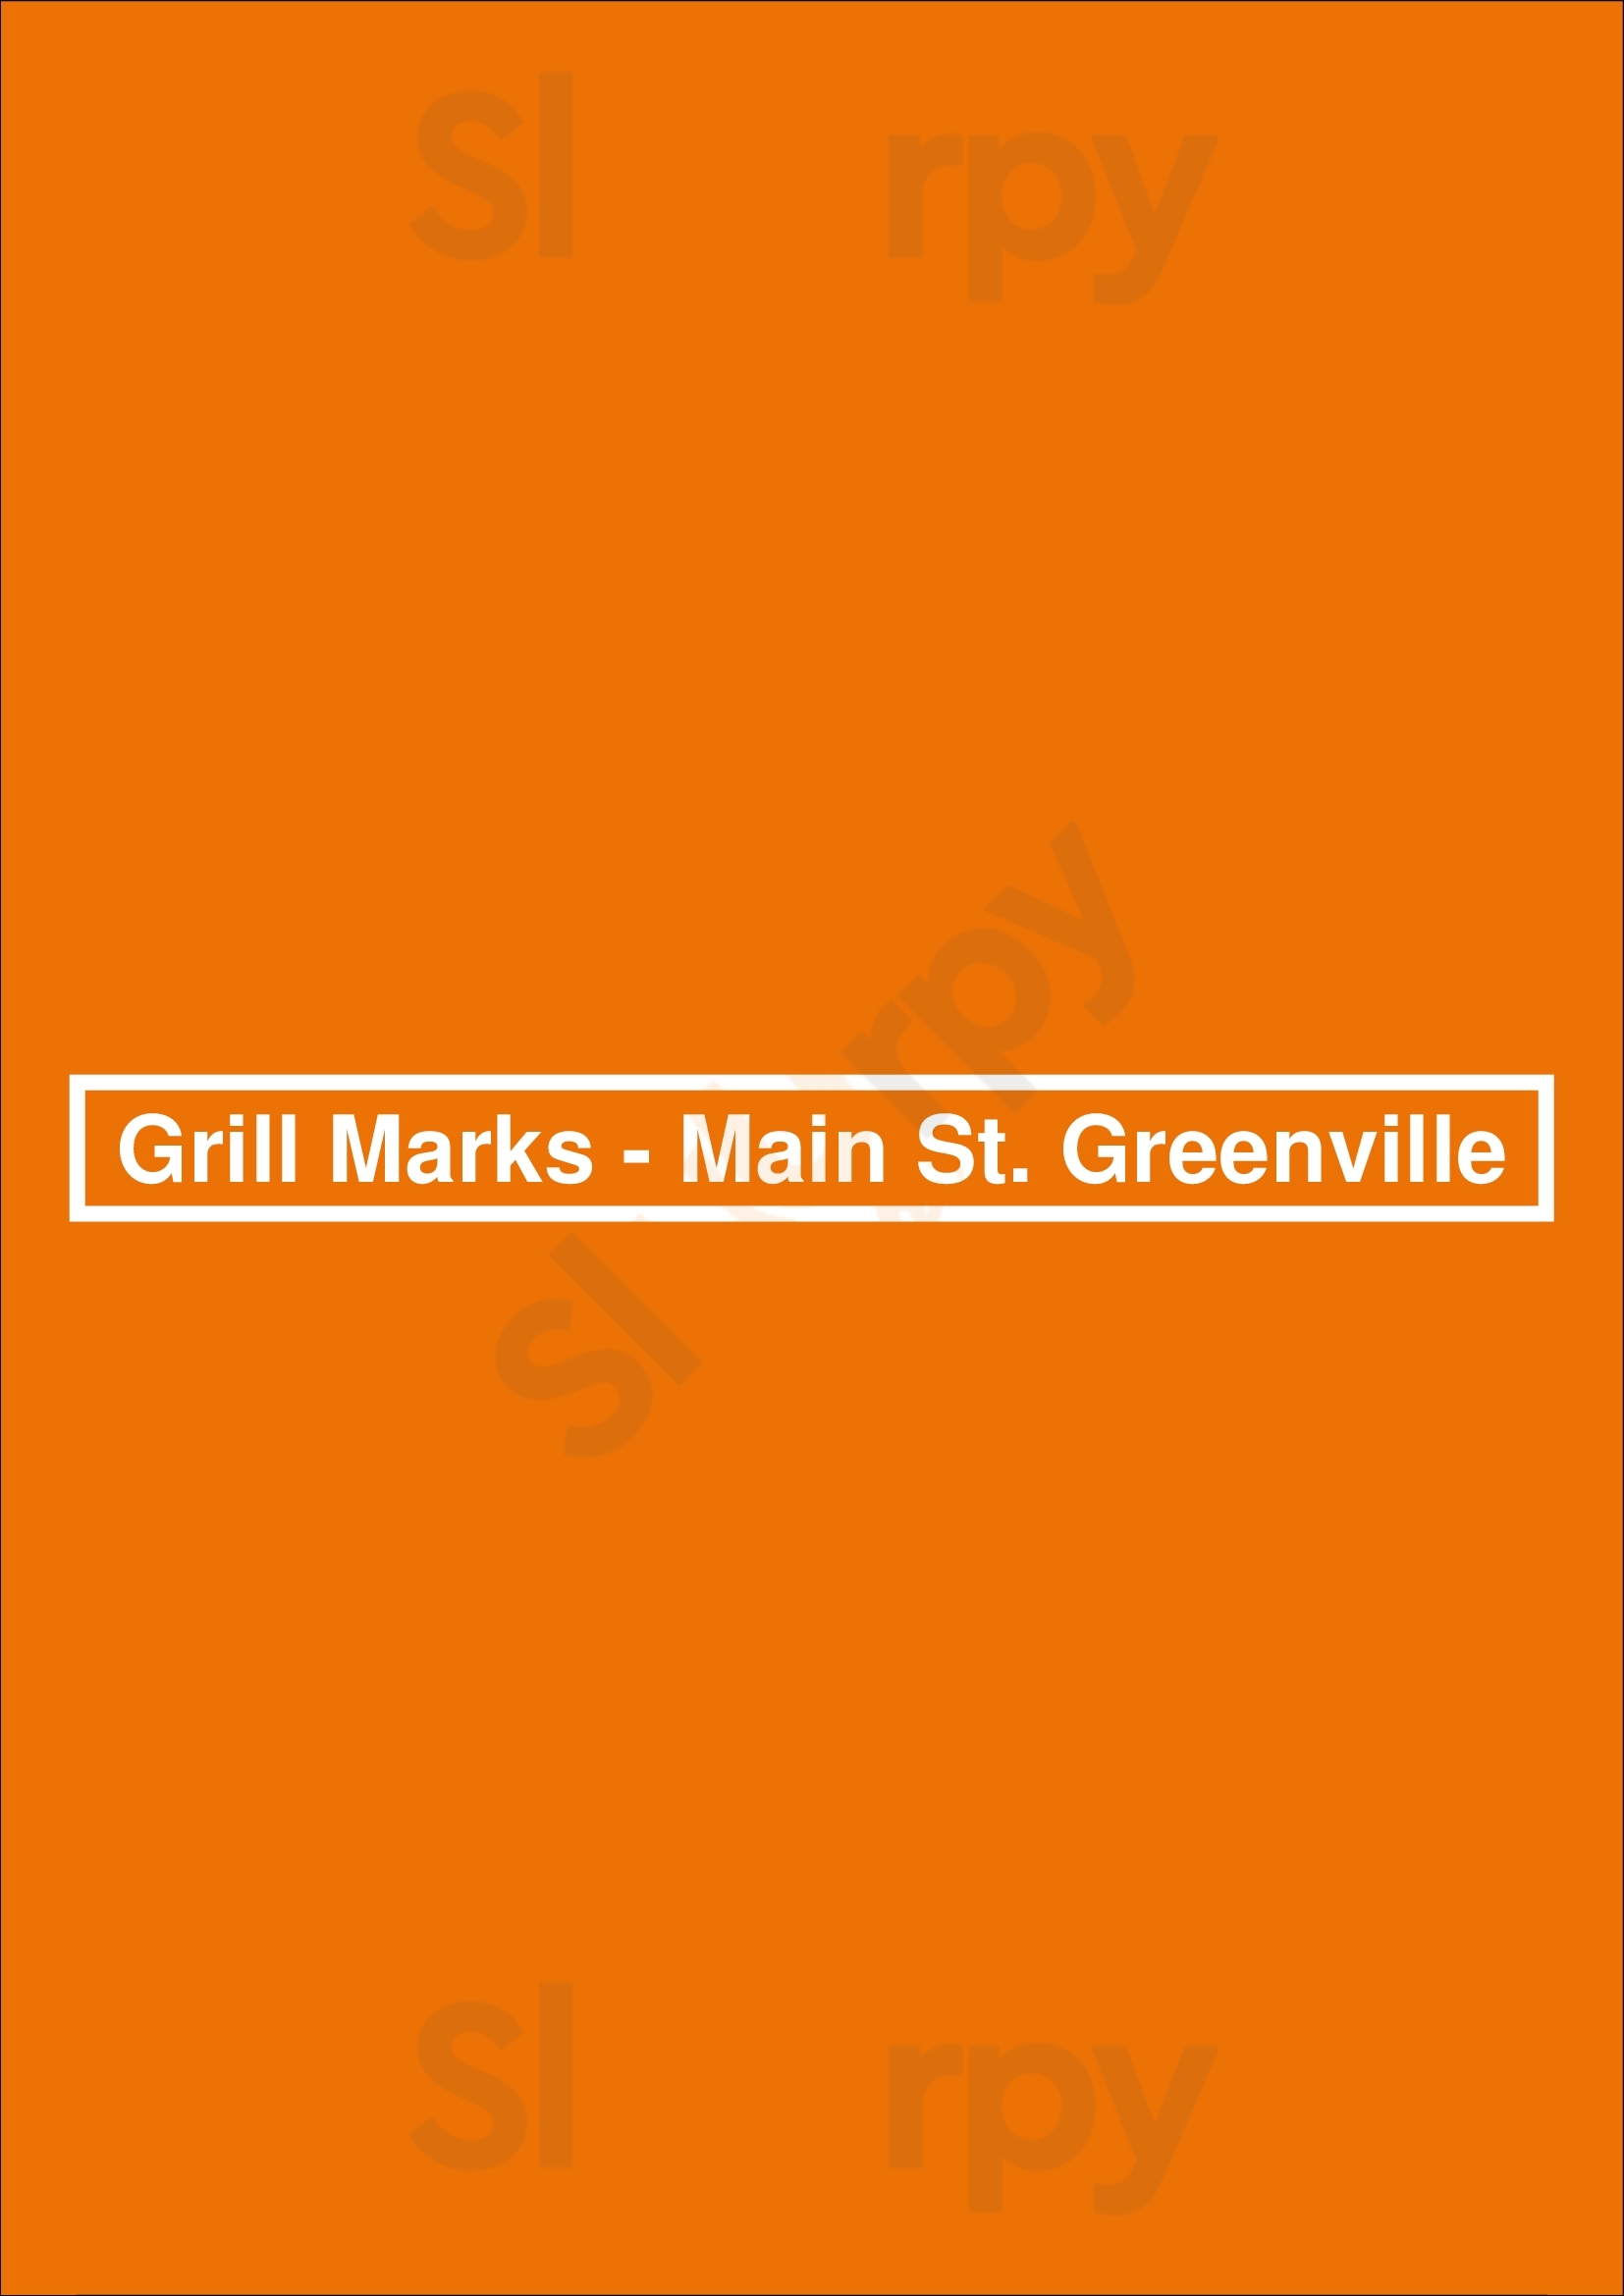 Grill Marks - Main St. Greenville Greenville Menu - 1